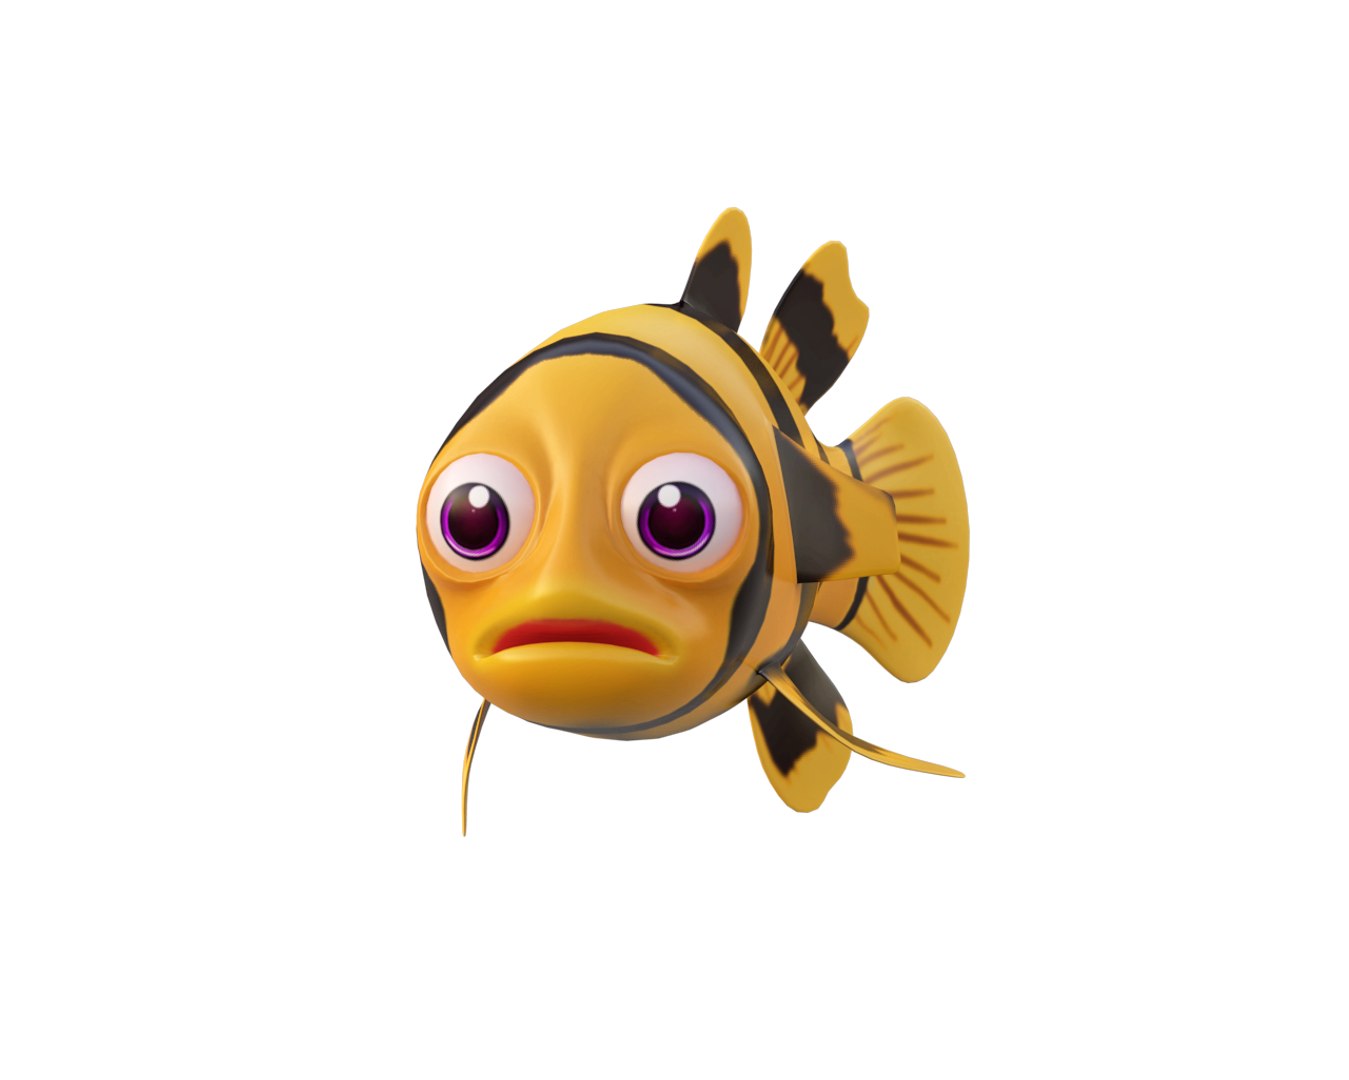 Bumblebee goby fish toon 3D model - TurboSquid 1586043